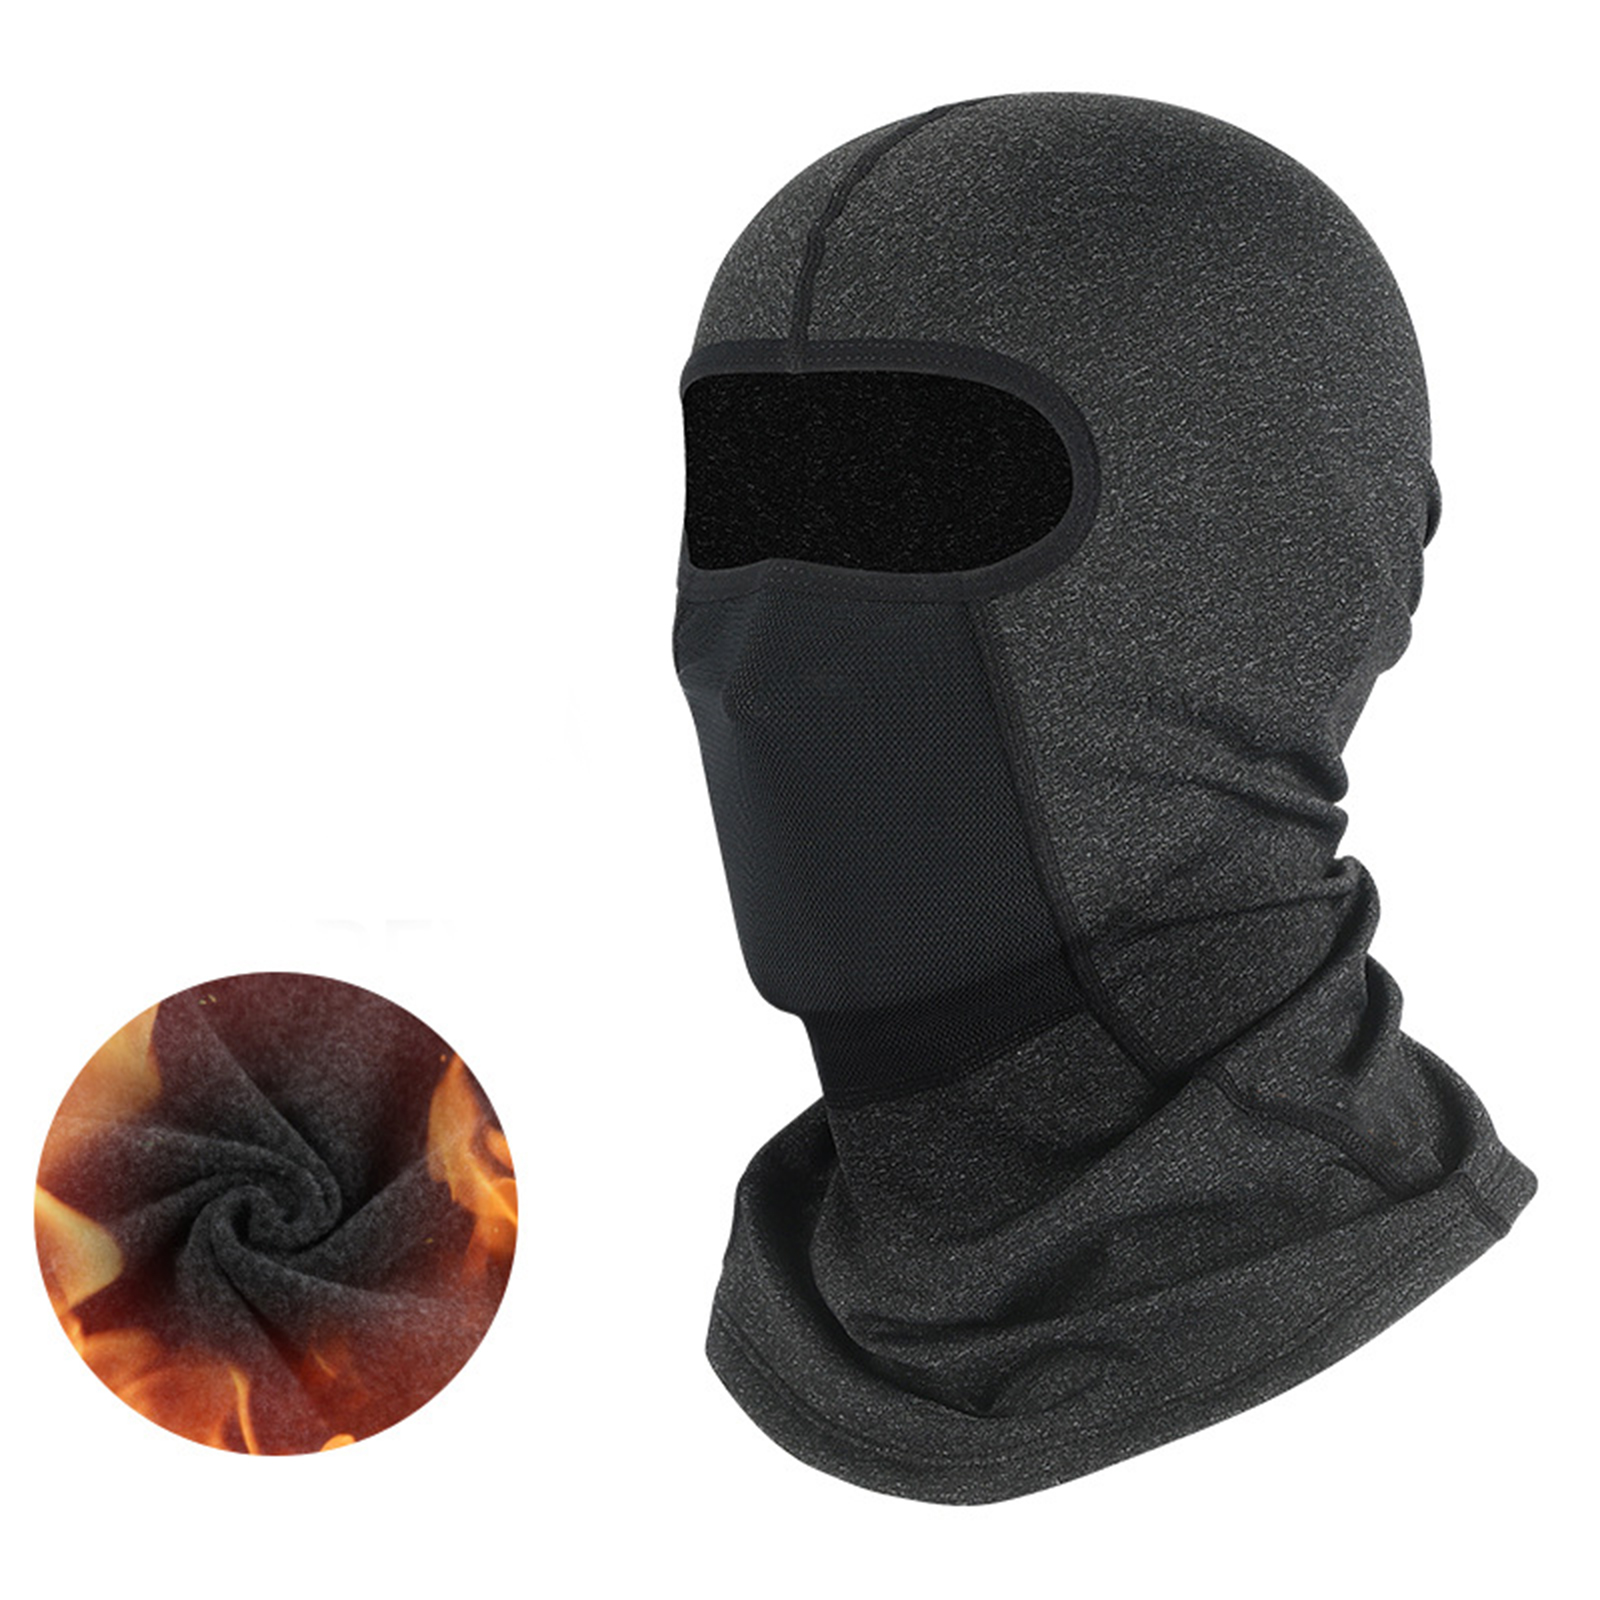 Motorcycle Full Face Mask Winter Warm Helmet For Men Women Cycling Motorbike Windproof Scarf Headgear Mask